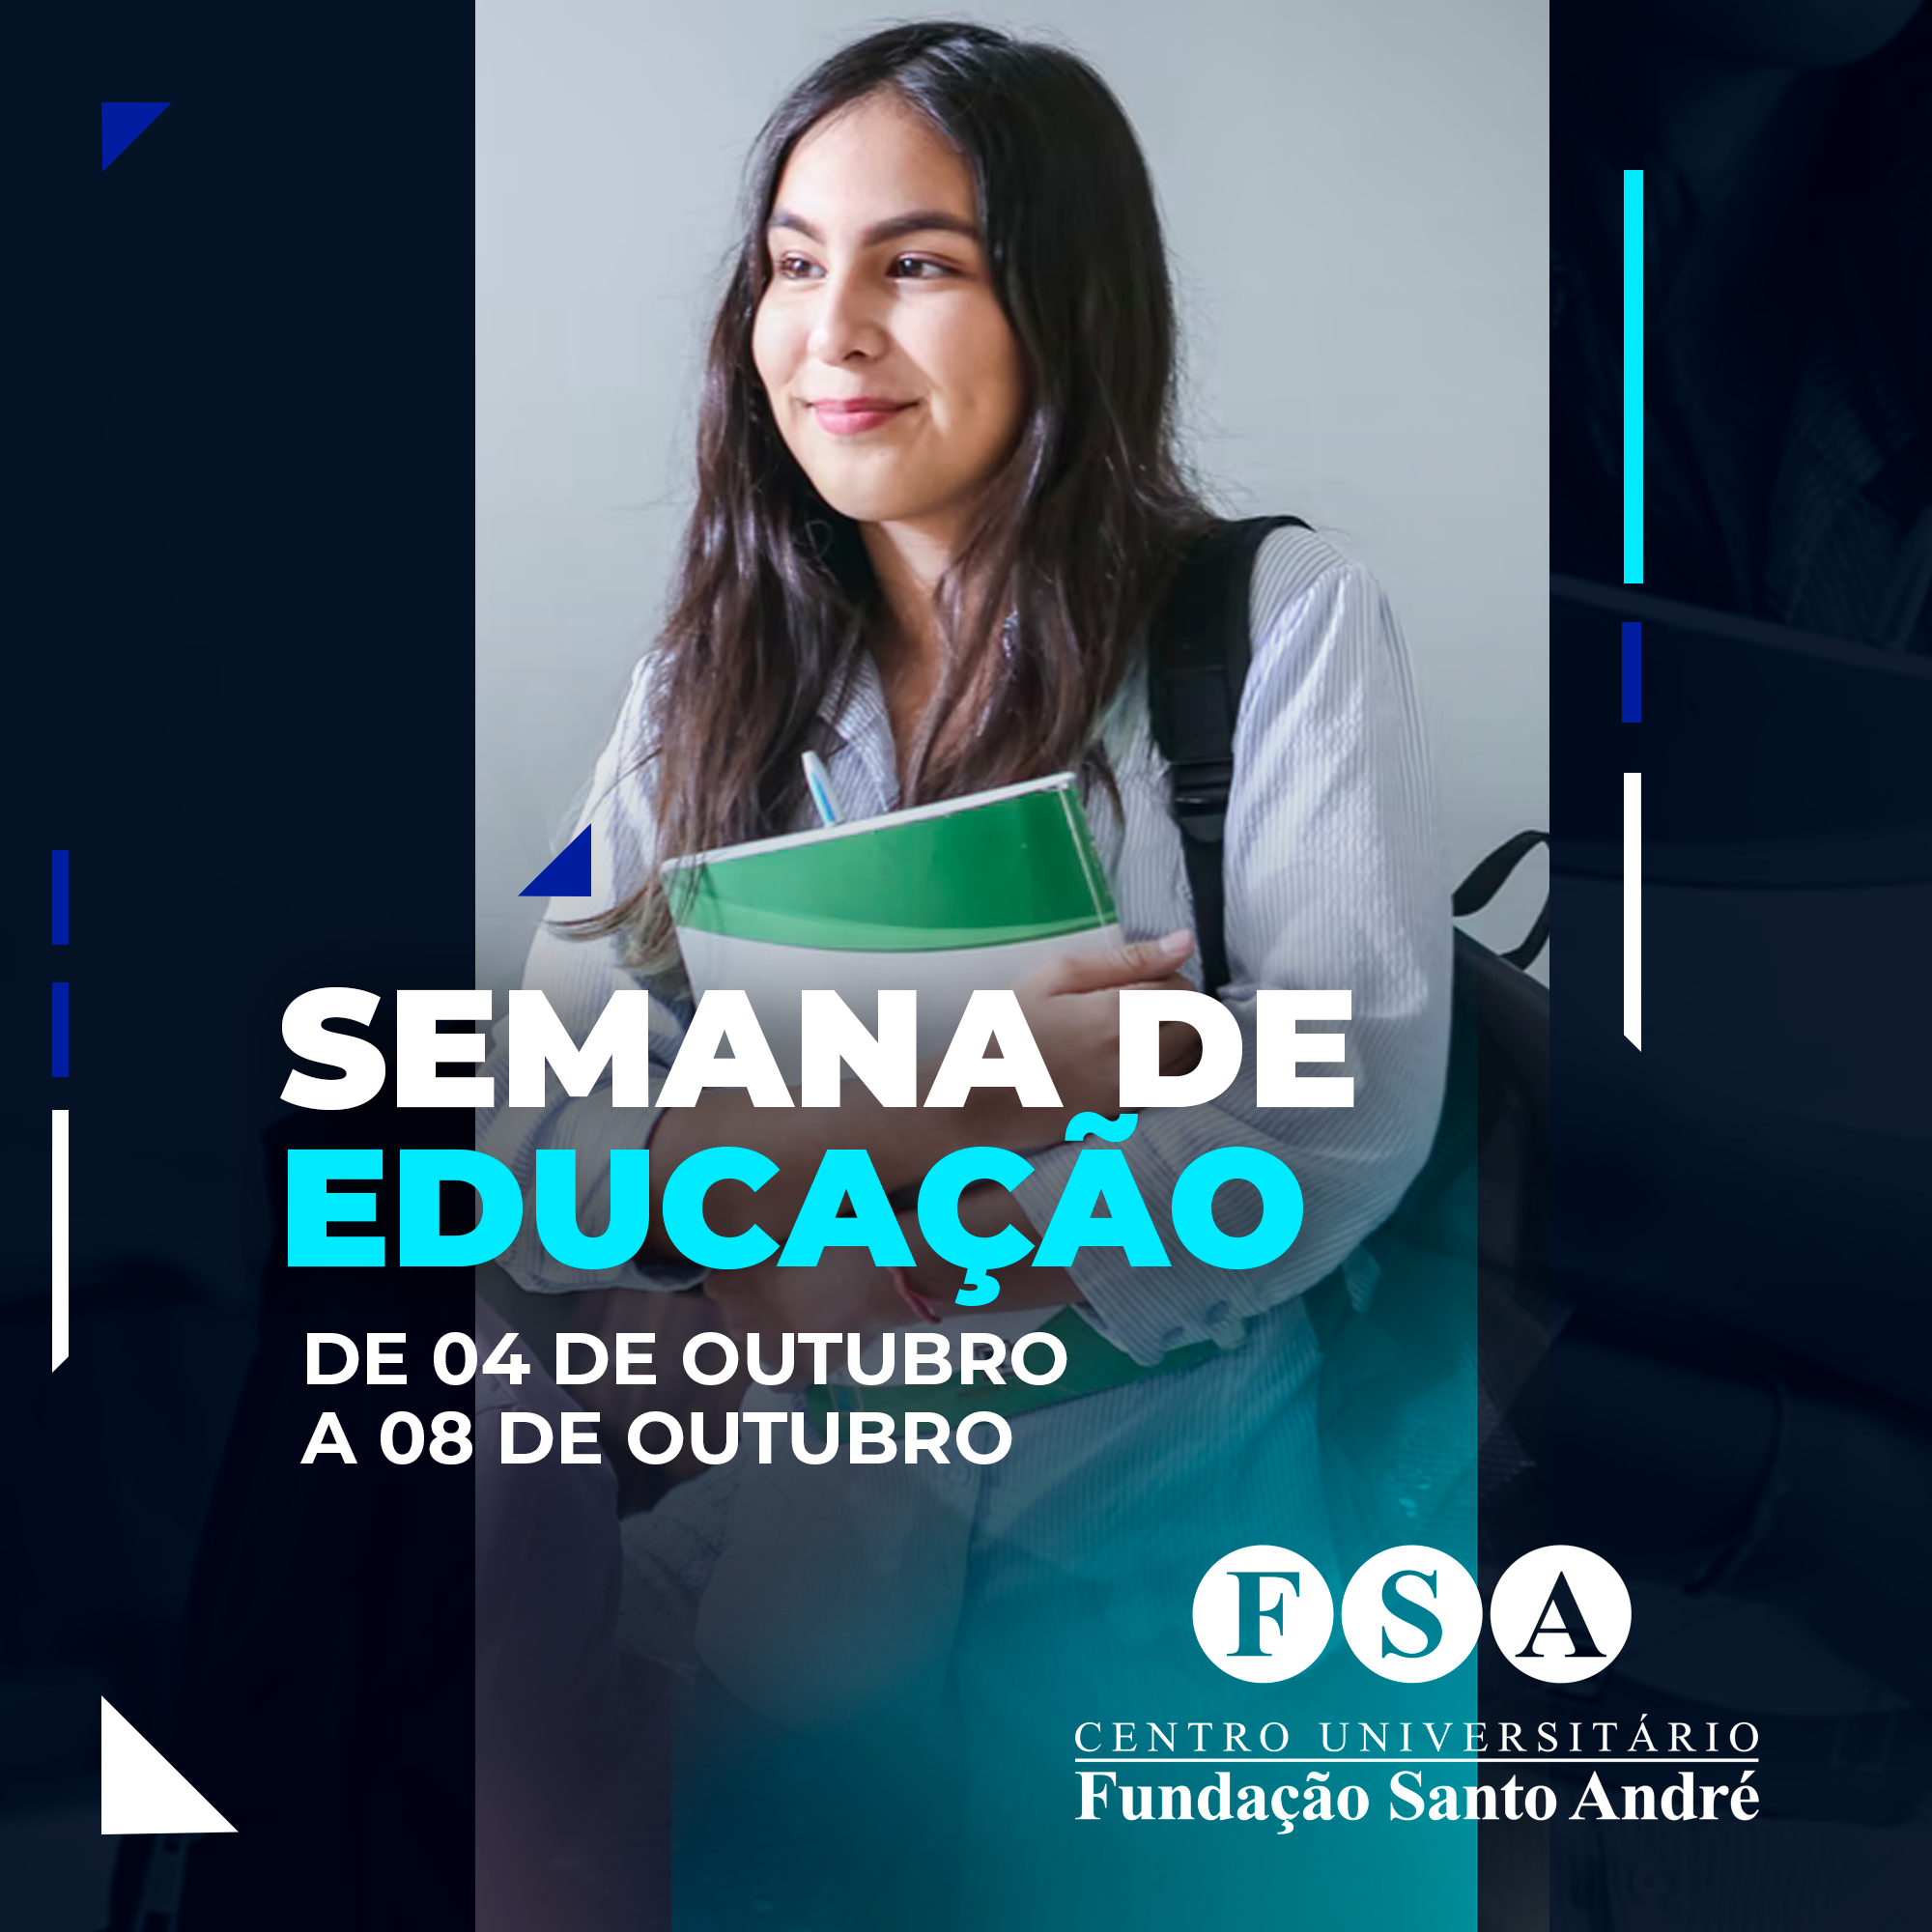 Centro Universitário Fundação Santo André realizará sua Semana de Educação 2021 – online